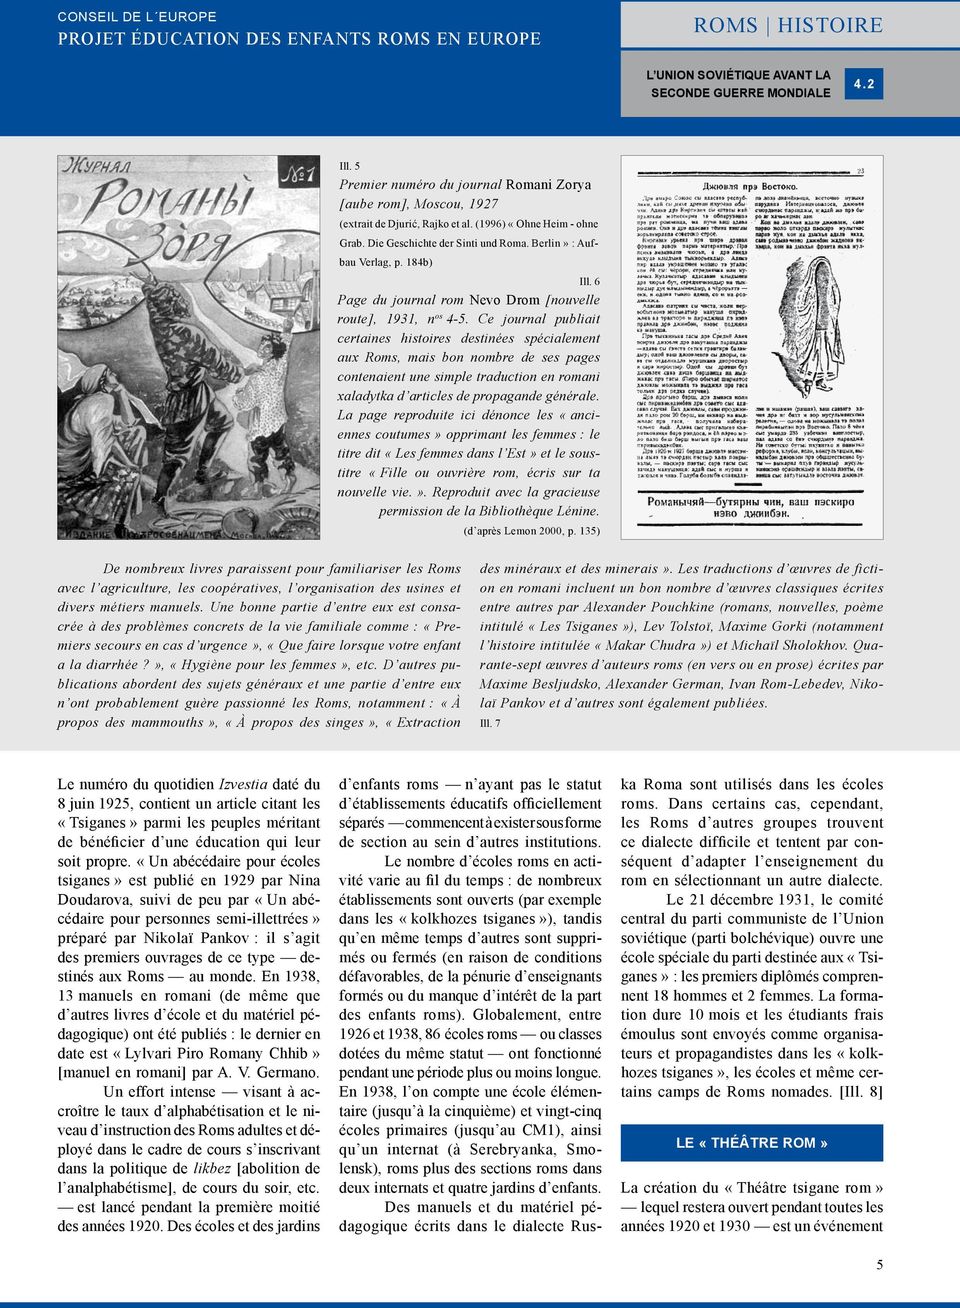 Ce journal publiait certaines histoires destinées spécialement aux Roms, mais bon nombre de ses pages contenaient une simple traduction en romani xaladytka d articles de propagande générale.